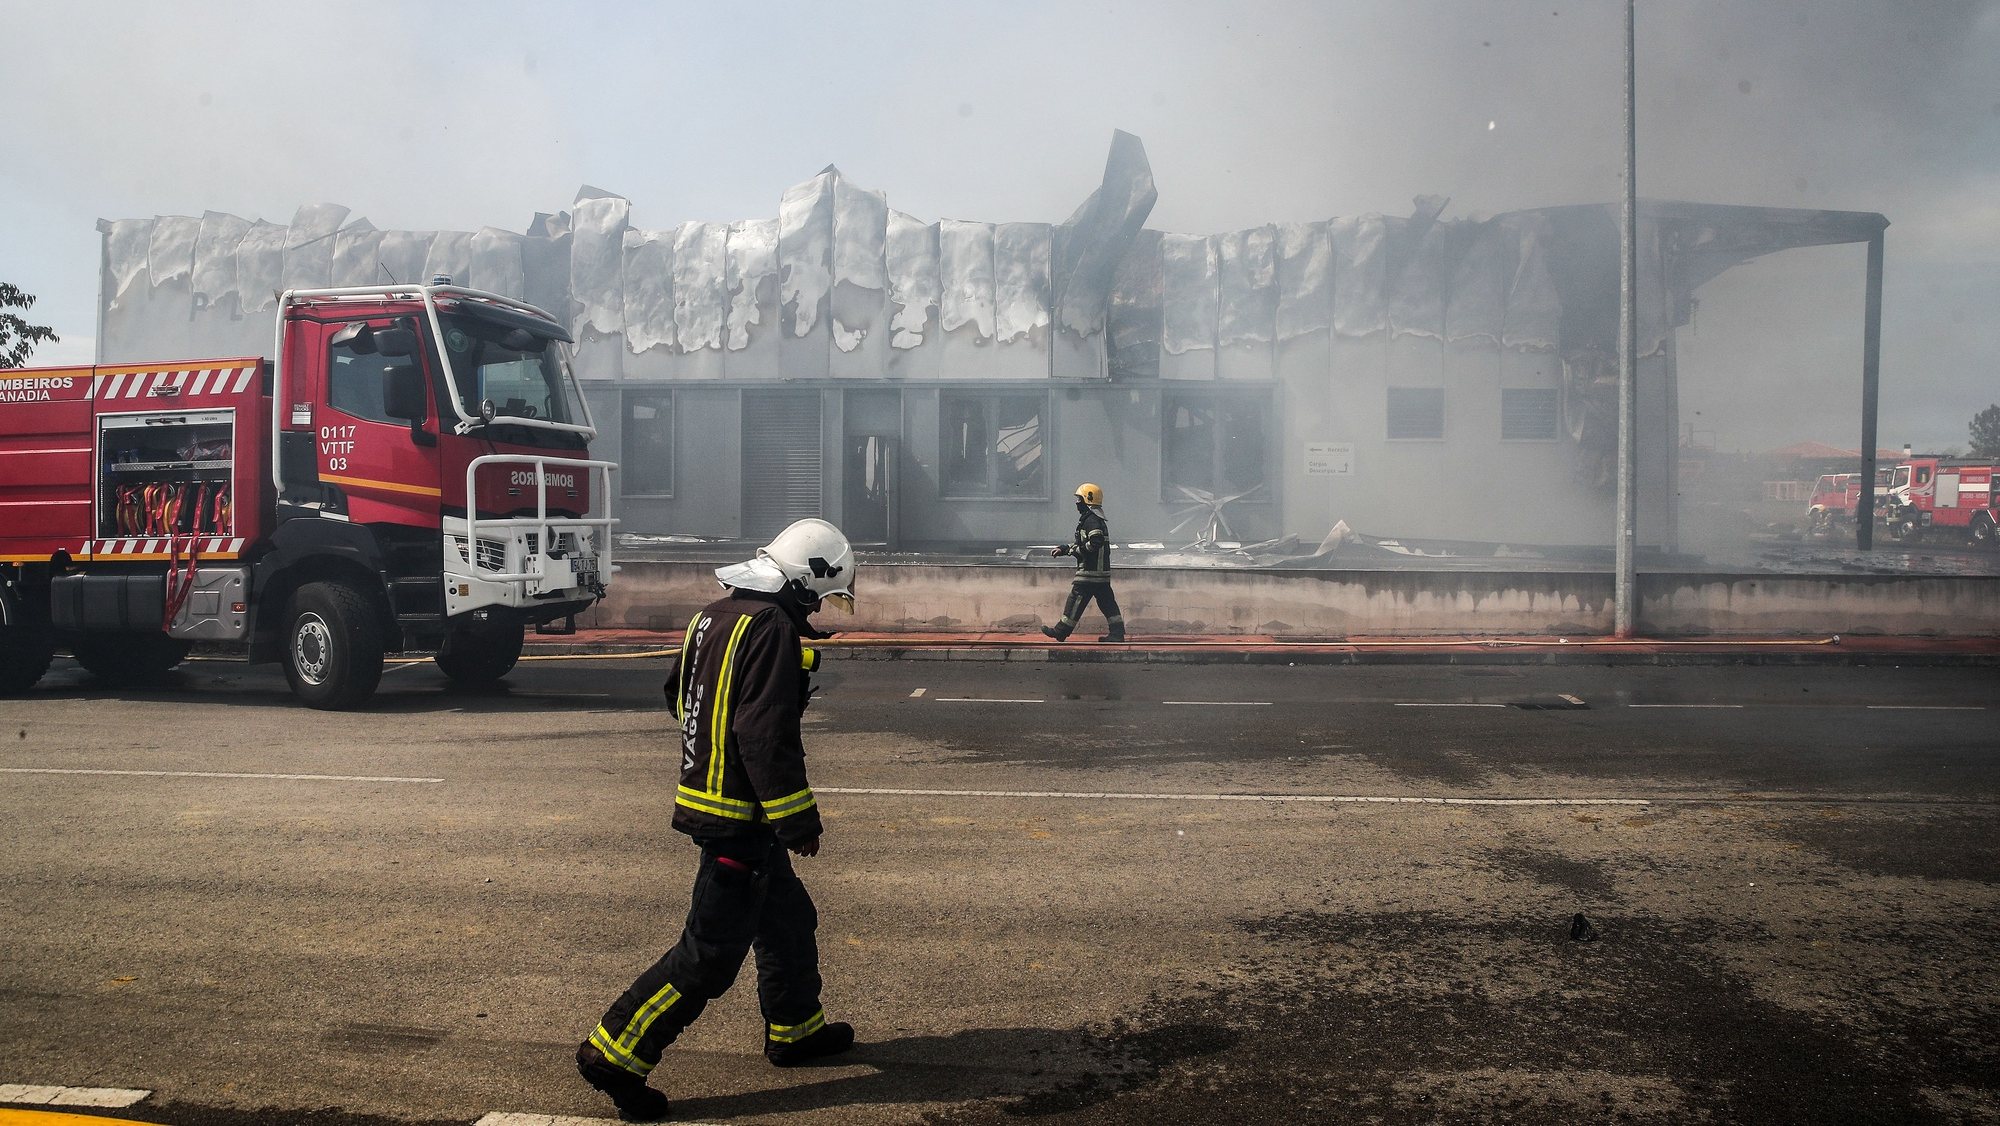 Bombeiros durante o combate ao incêndio que destruiu a empresa de embalagens e recipientes, Policarpo Ferreira da Silva, na zona industrial de Paraimo, em Sangalhos, Anadia, 31 de agosto de 2021. PAULO NOVAIS/LUSA